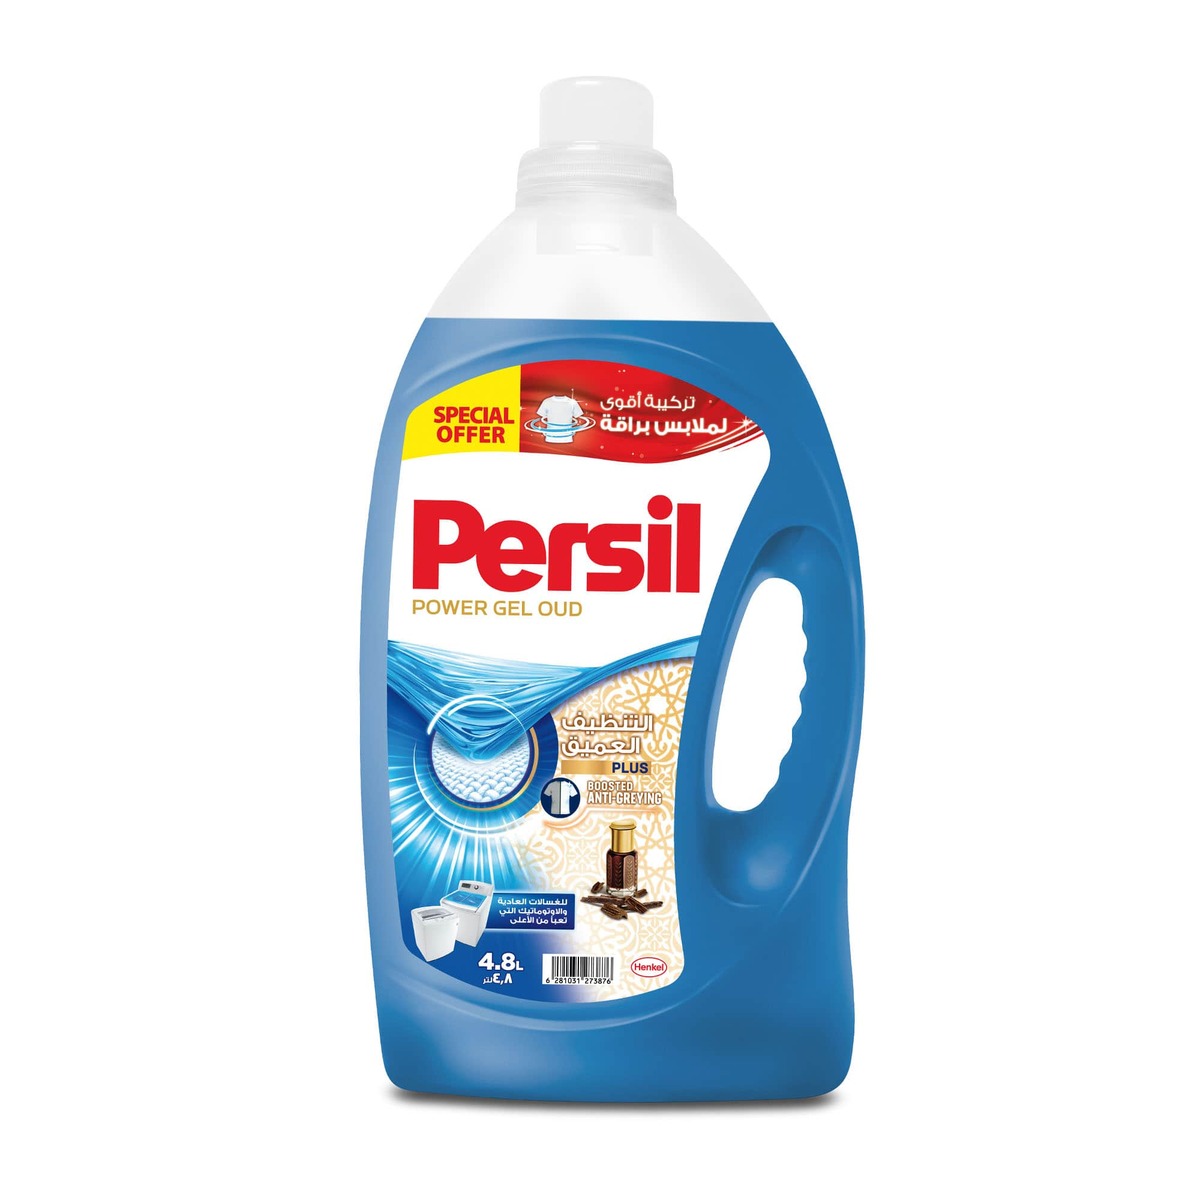 اشتري قم بشراء برسيل باور جل سائل غسيل برائحة العود 4.8 لتر Online at Best Price من الموقع - من لولو هايبر ماركت Liquid Detergent في السعودية